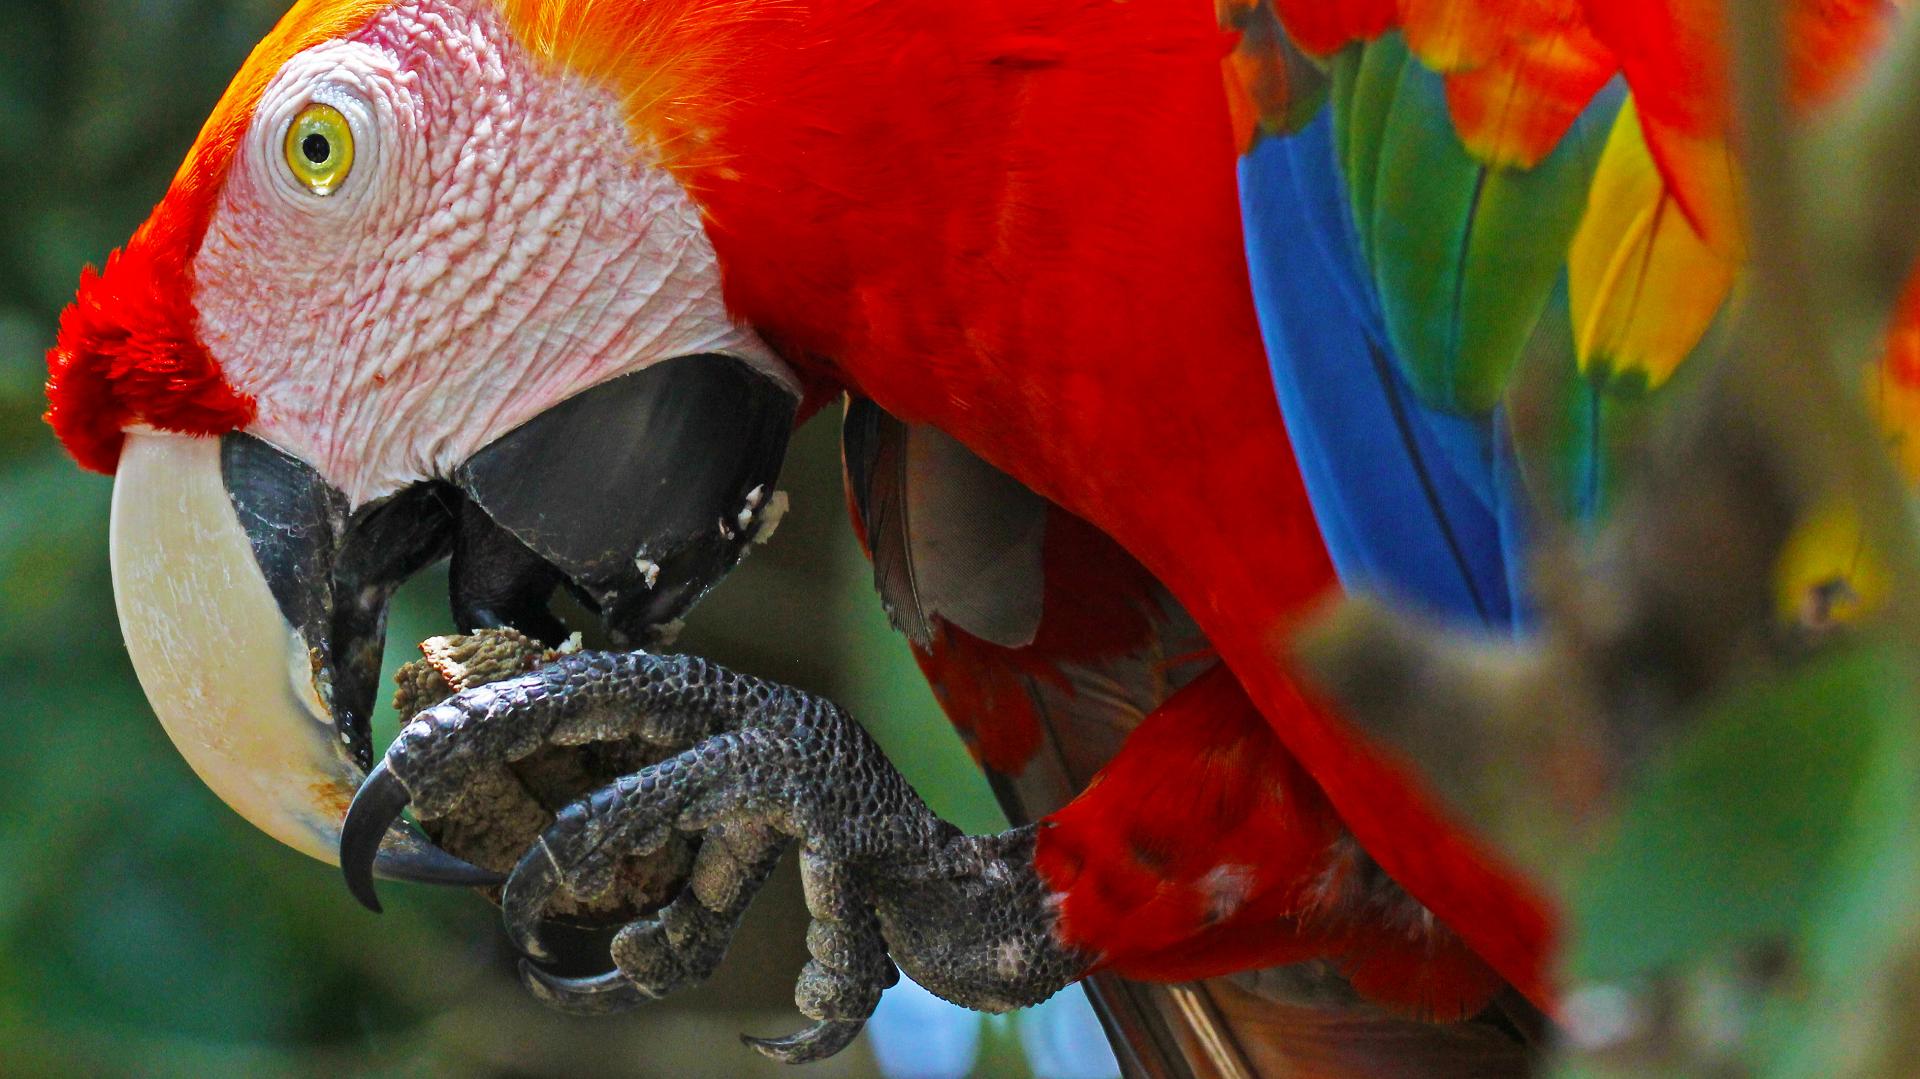 Papagei in Brasilien